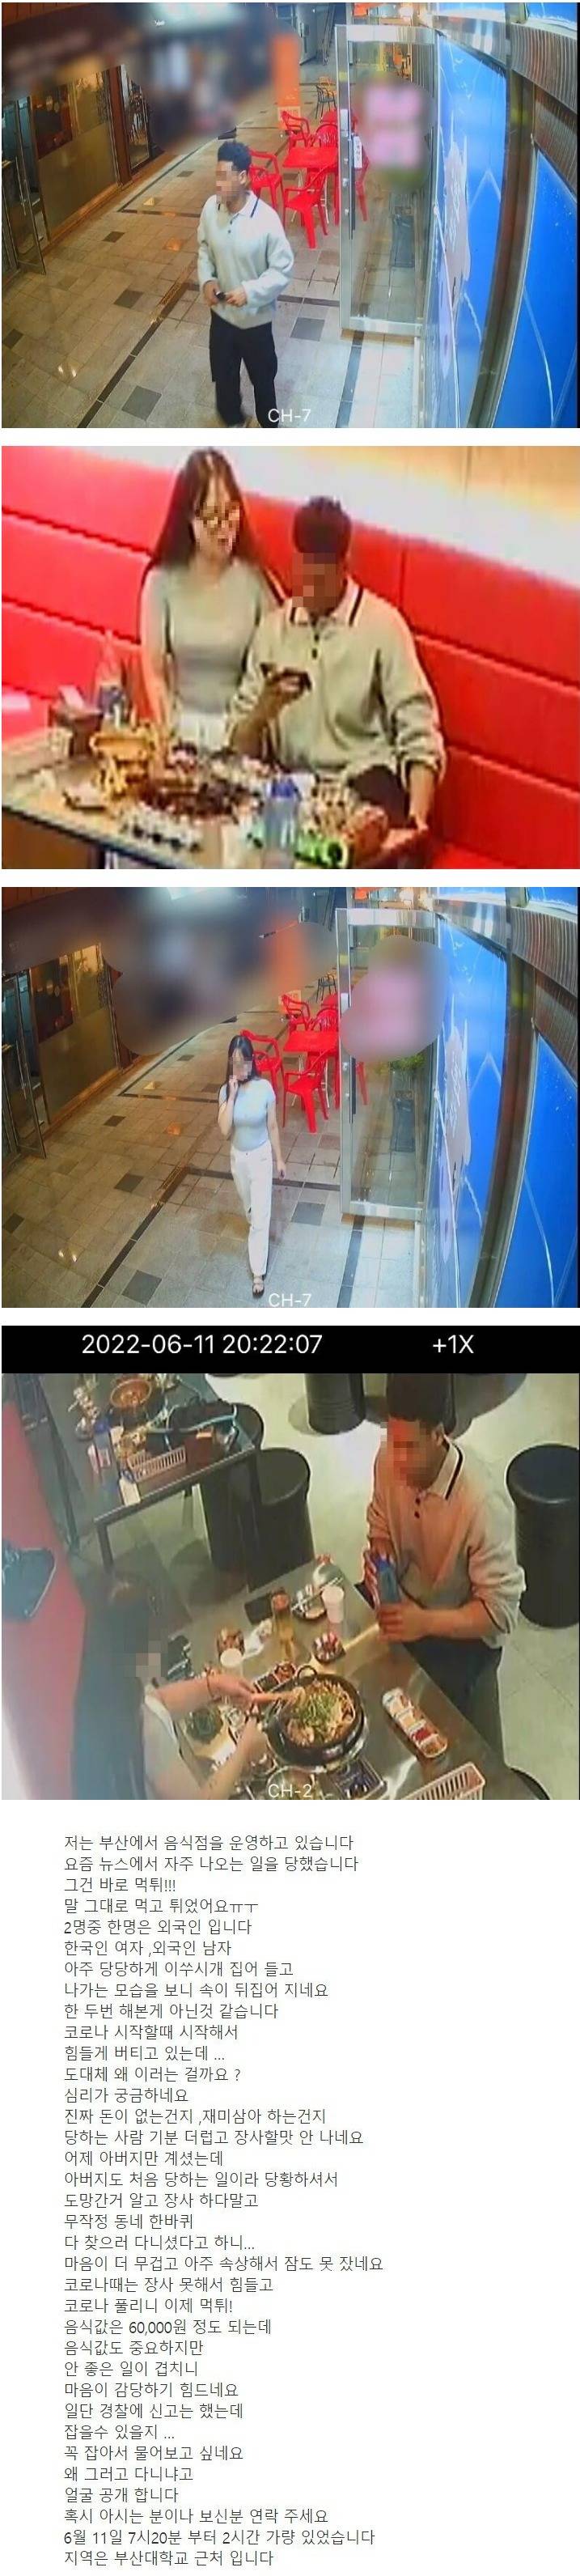 飲食店で食い逃げした外国人男性と韓国人女性